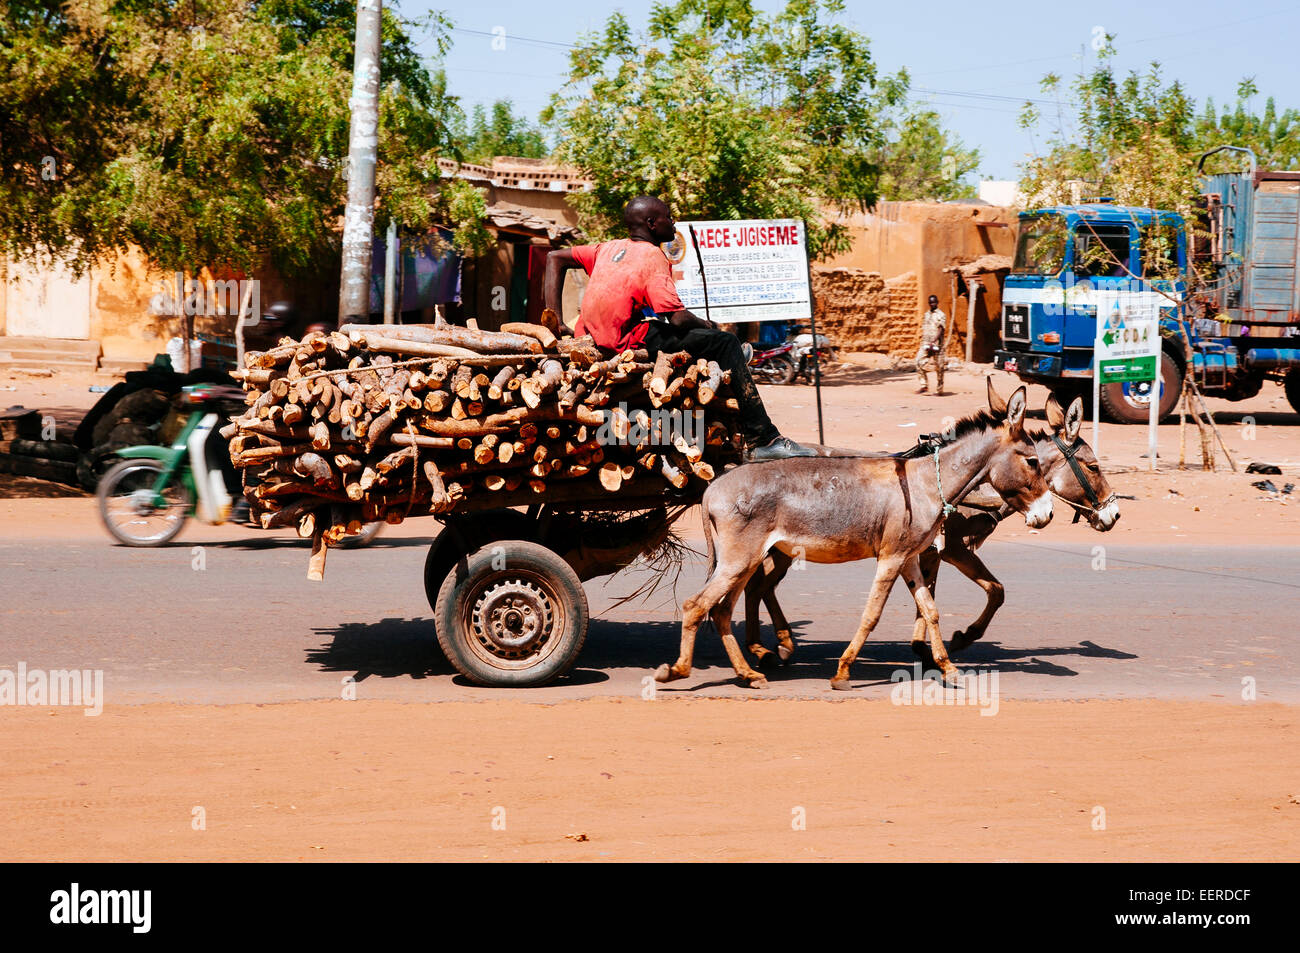 Transport de l'homme de bois de chauffage sur des ânes, au Burkina Faso. Banque D'Images